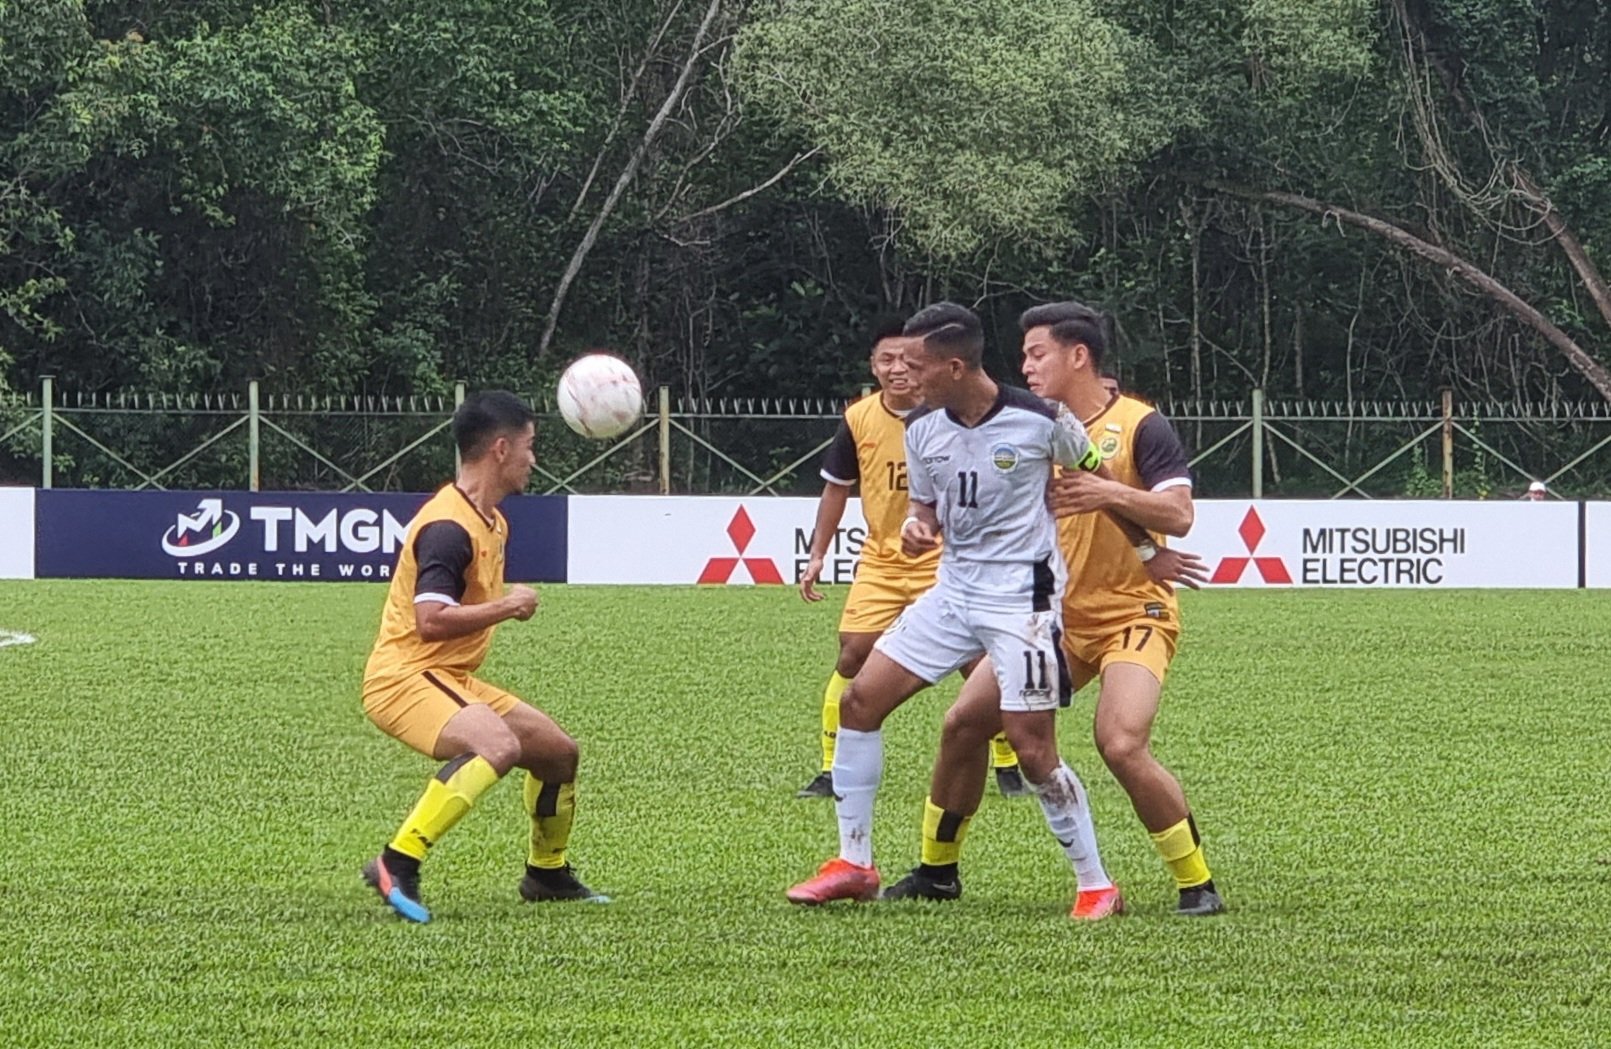 Hasil Play-off Piala AFF 2022: Brunei Darussalam Lumat Timor Leste di Leg Pertama